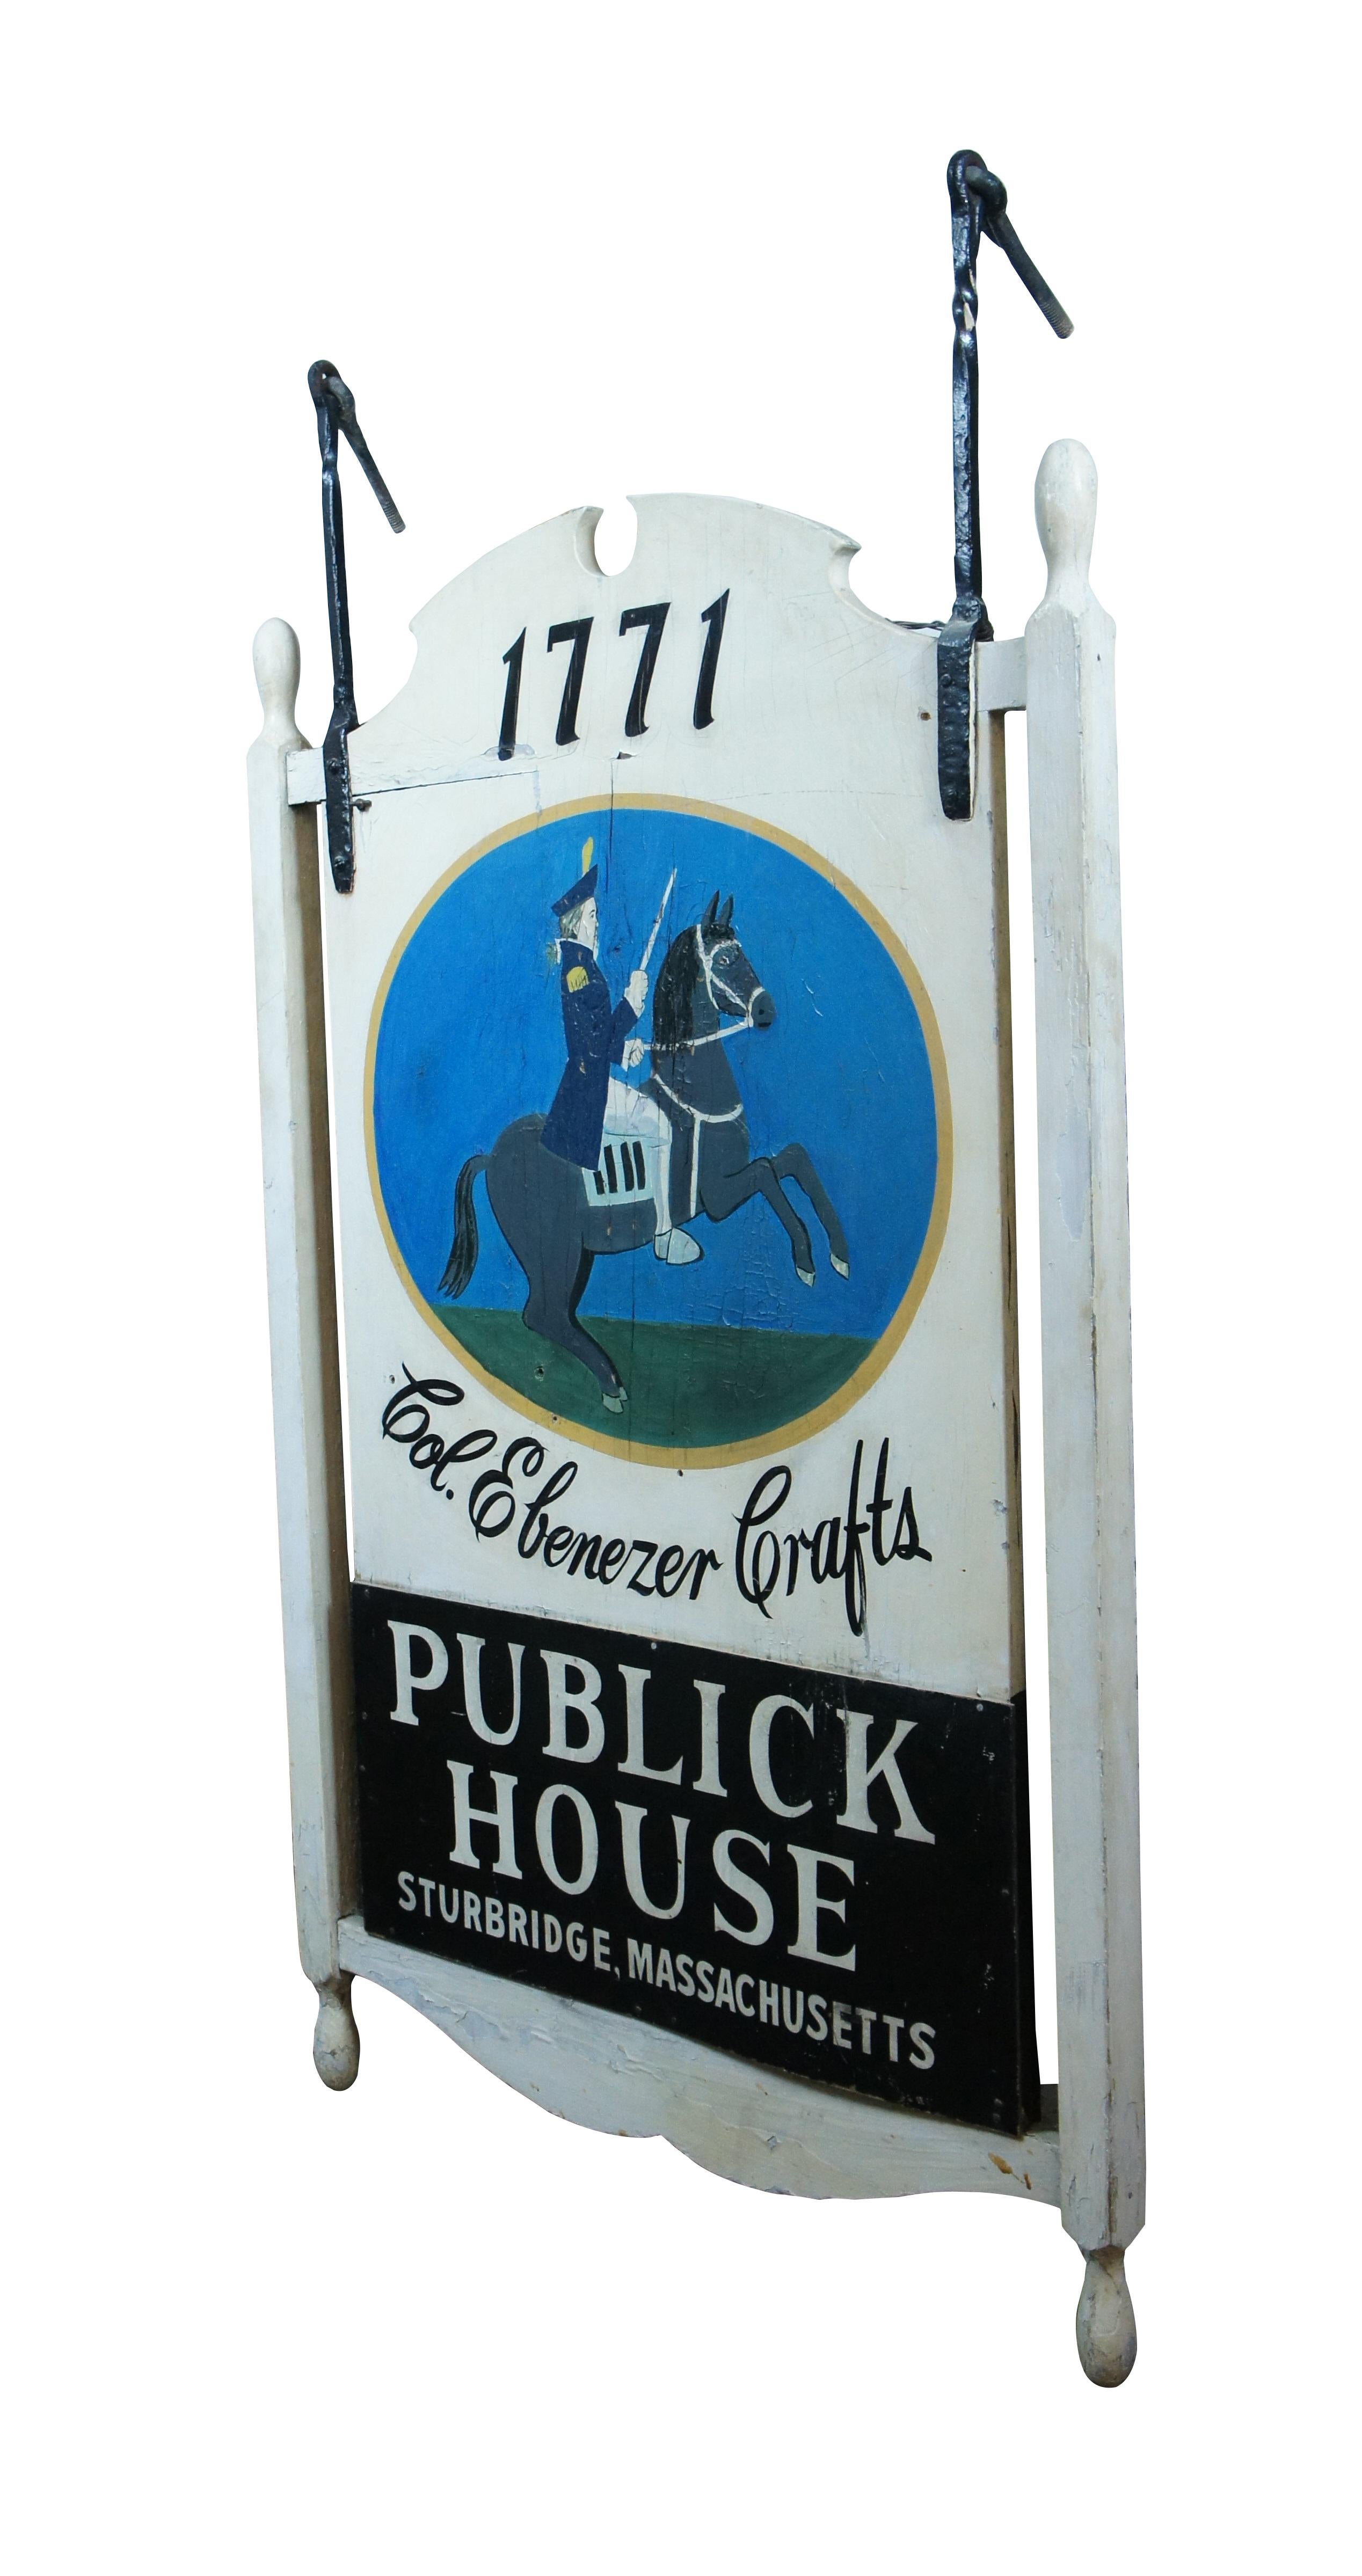 Seltene antike geborgene Col. Ebenezer Crafts' Publick House in Sturbridge, Massachusetts, est. 1771 Zeichen. Handbemalte Holzkonstruktion in Weiß mit schwarzer und weißer Schrift um ein blau-grün-goldenes Emblem, das einen revolutionären Soldaten